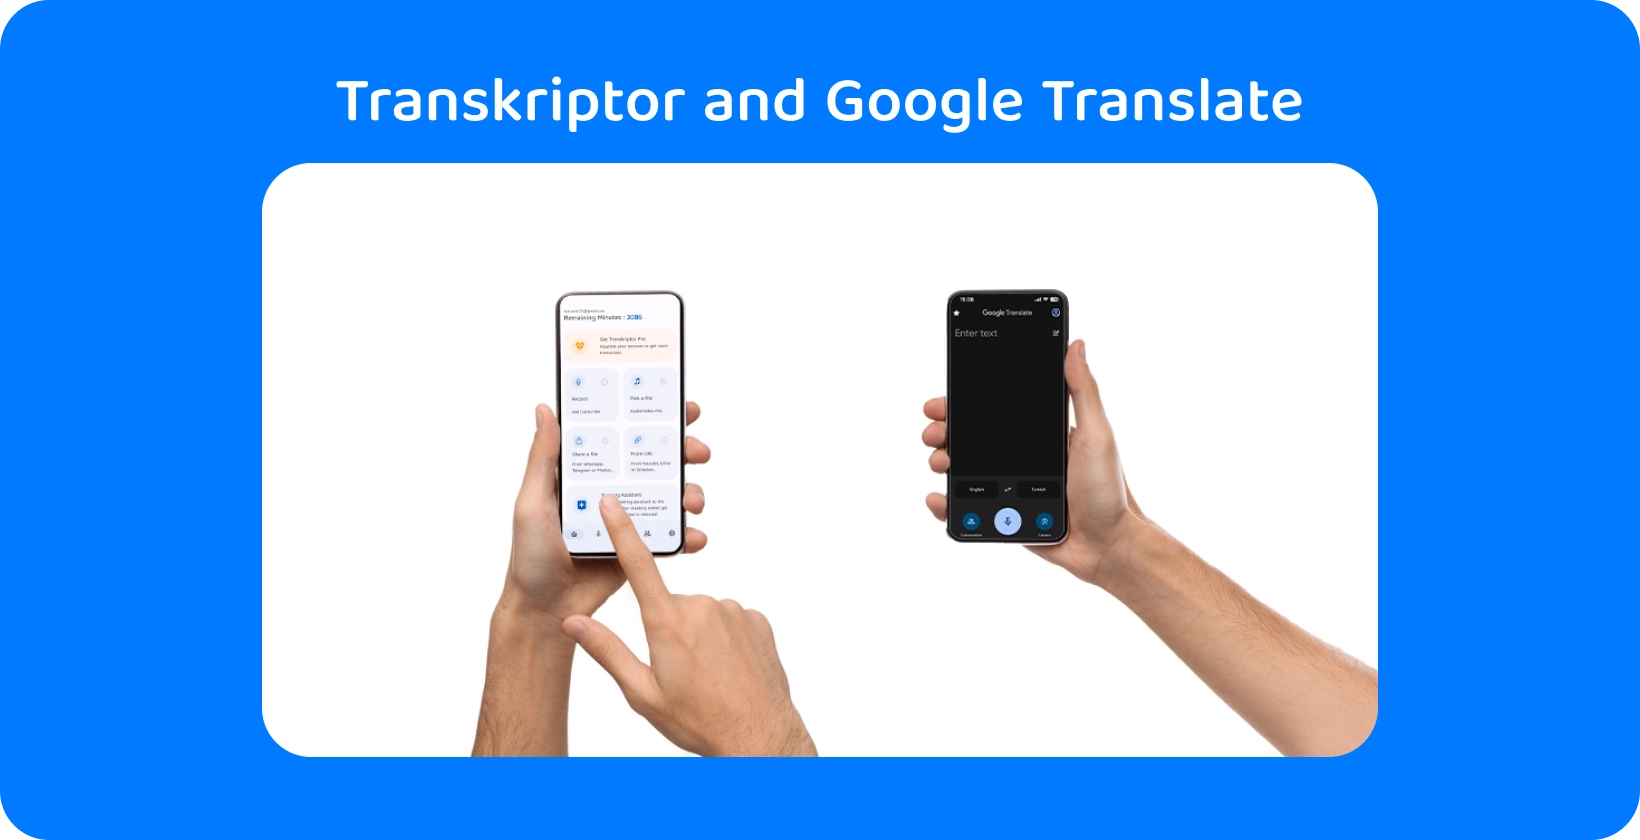 Duas mãos segurando smartphones com Transkriptor e Google Translate, demonstrando transcrição e tradução de áudio.